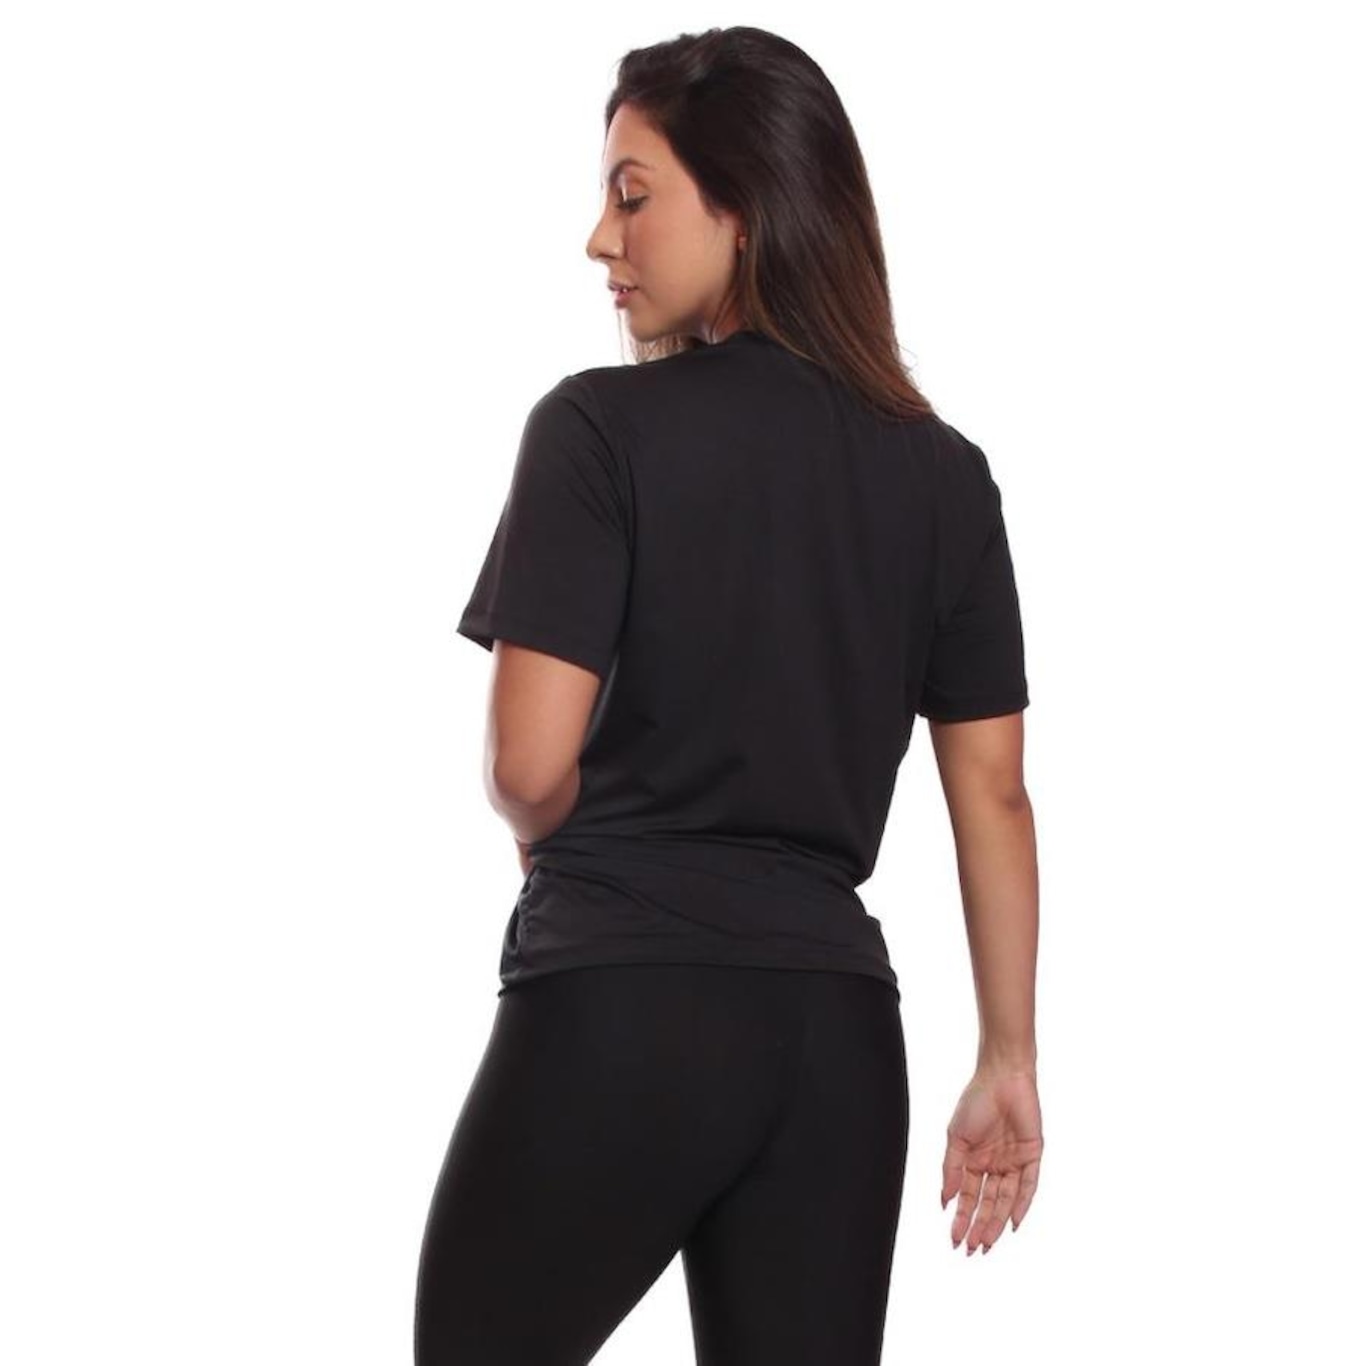 kit Conjunto Fitness Feminino Roupa Academia + camiseta Dry fit feminina